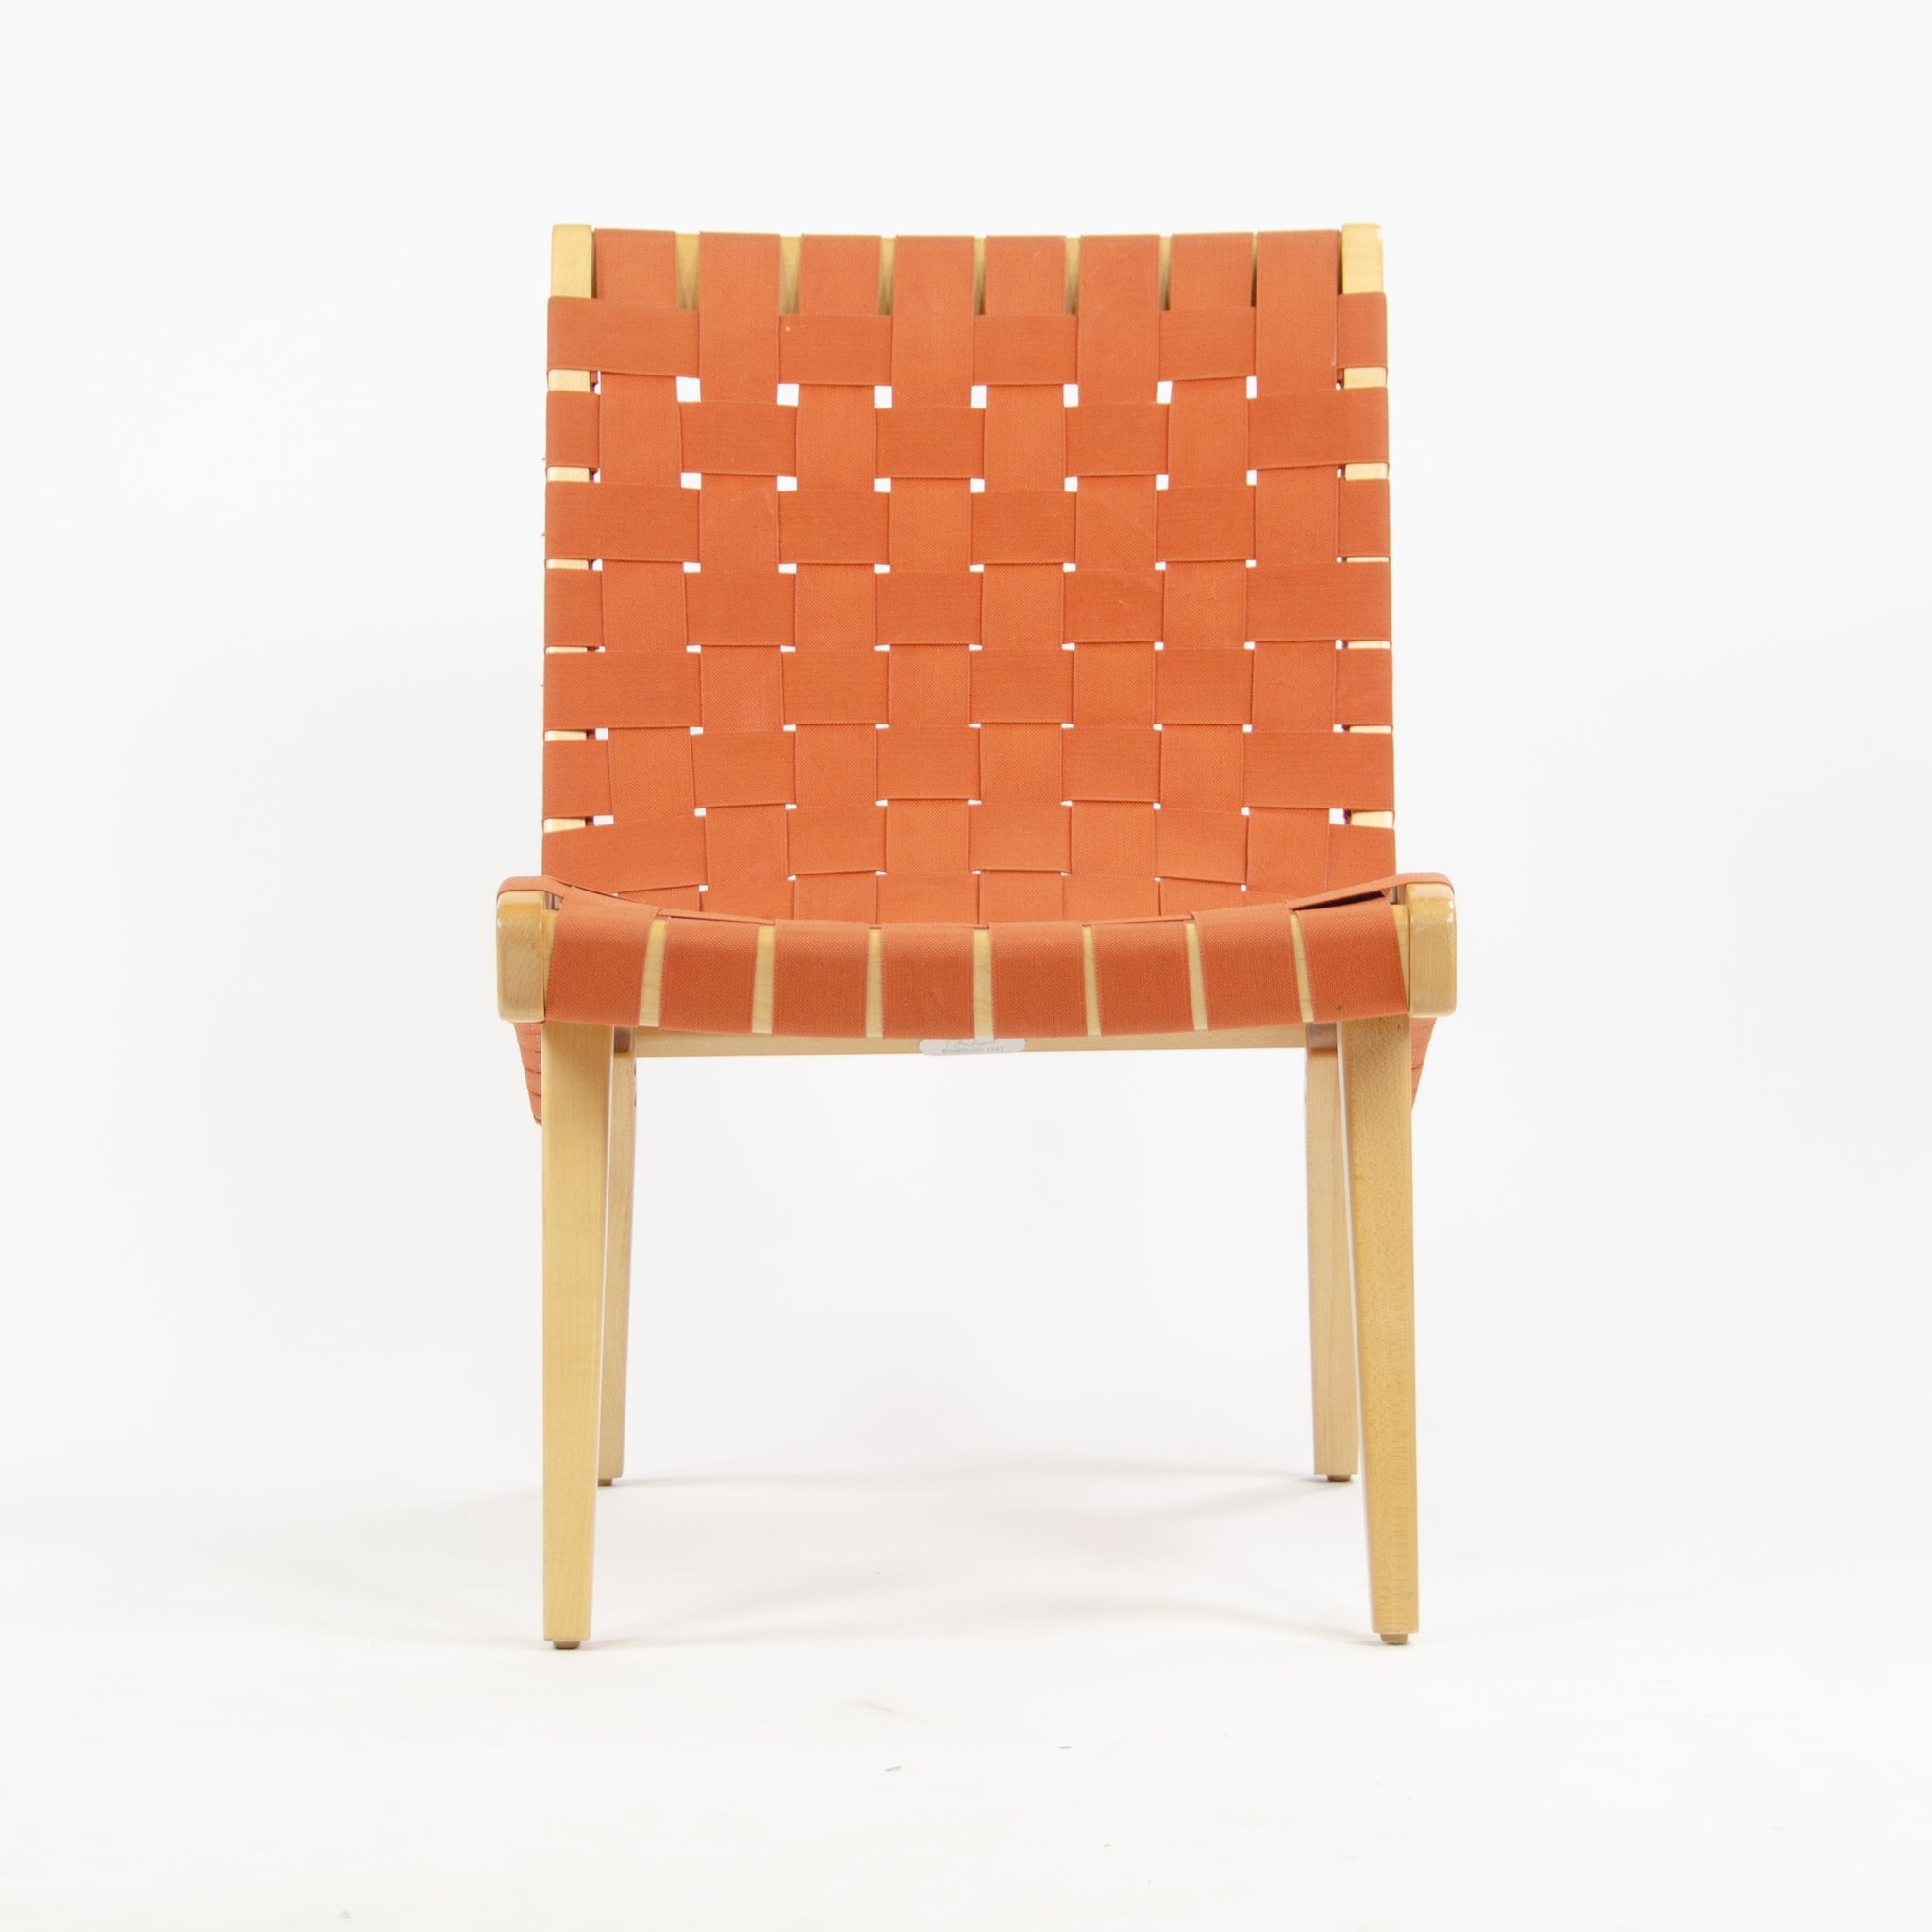 SOLD Knoll Studio Jens Risom Lounge Chair Maple w/ Red Orange Webbing